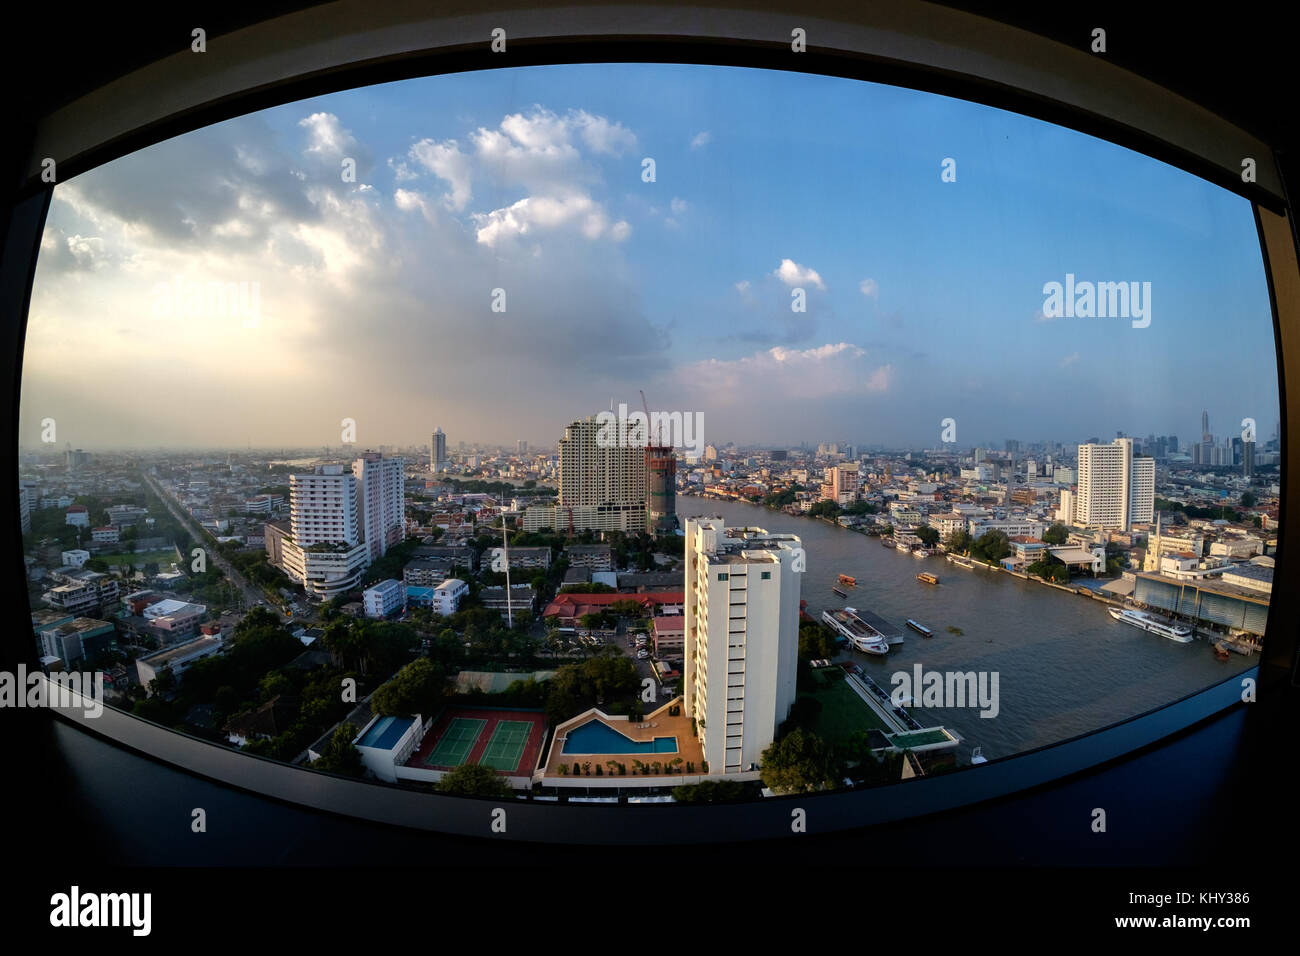 Looking north along the Chao Phraya river in Bangkok, Thailand. Stock Photo